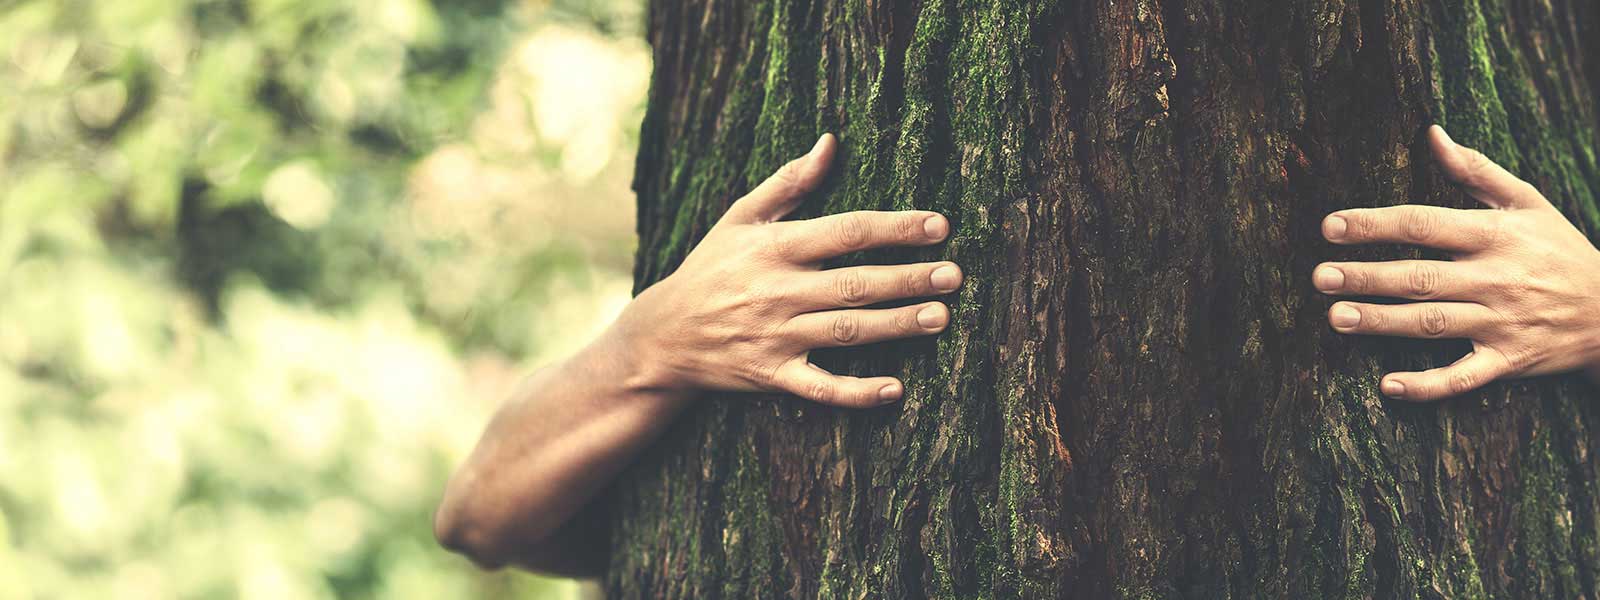 wertsicht – services climate tree hug